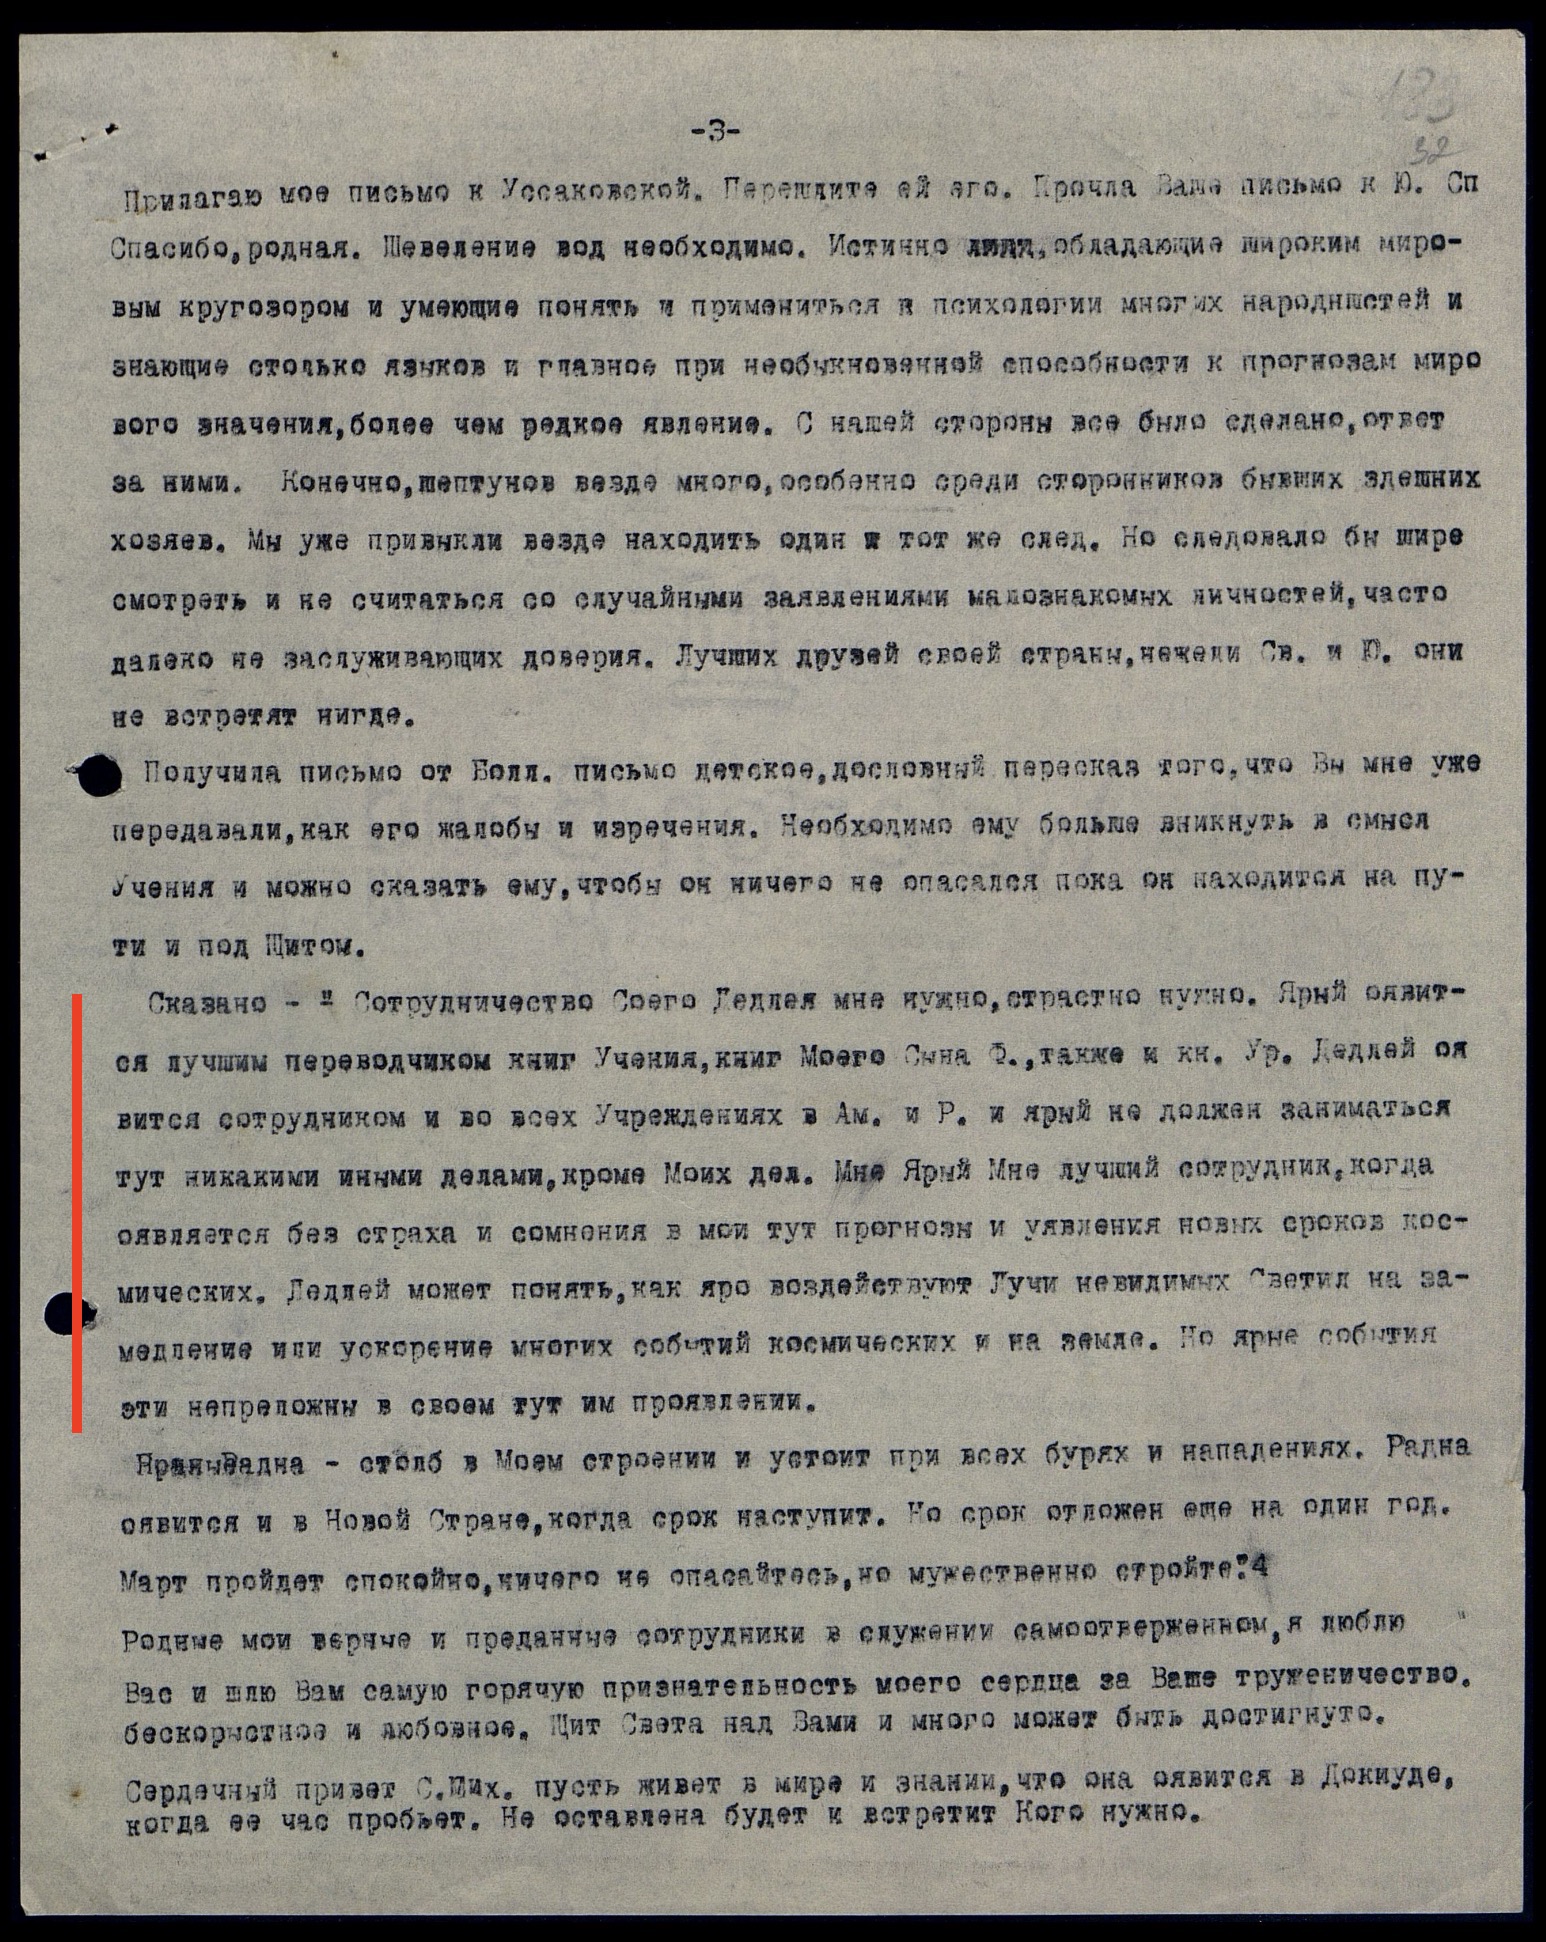 Письмо No72. З.Г. Фосдик и Д. Фосдику. от 7.12.1951